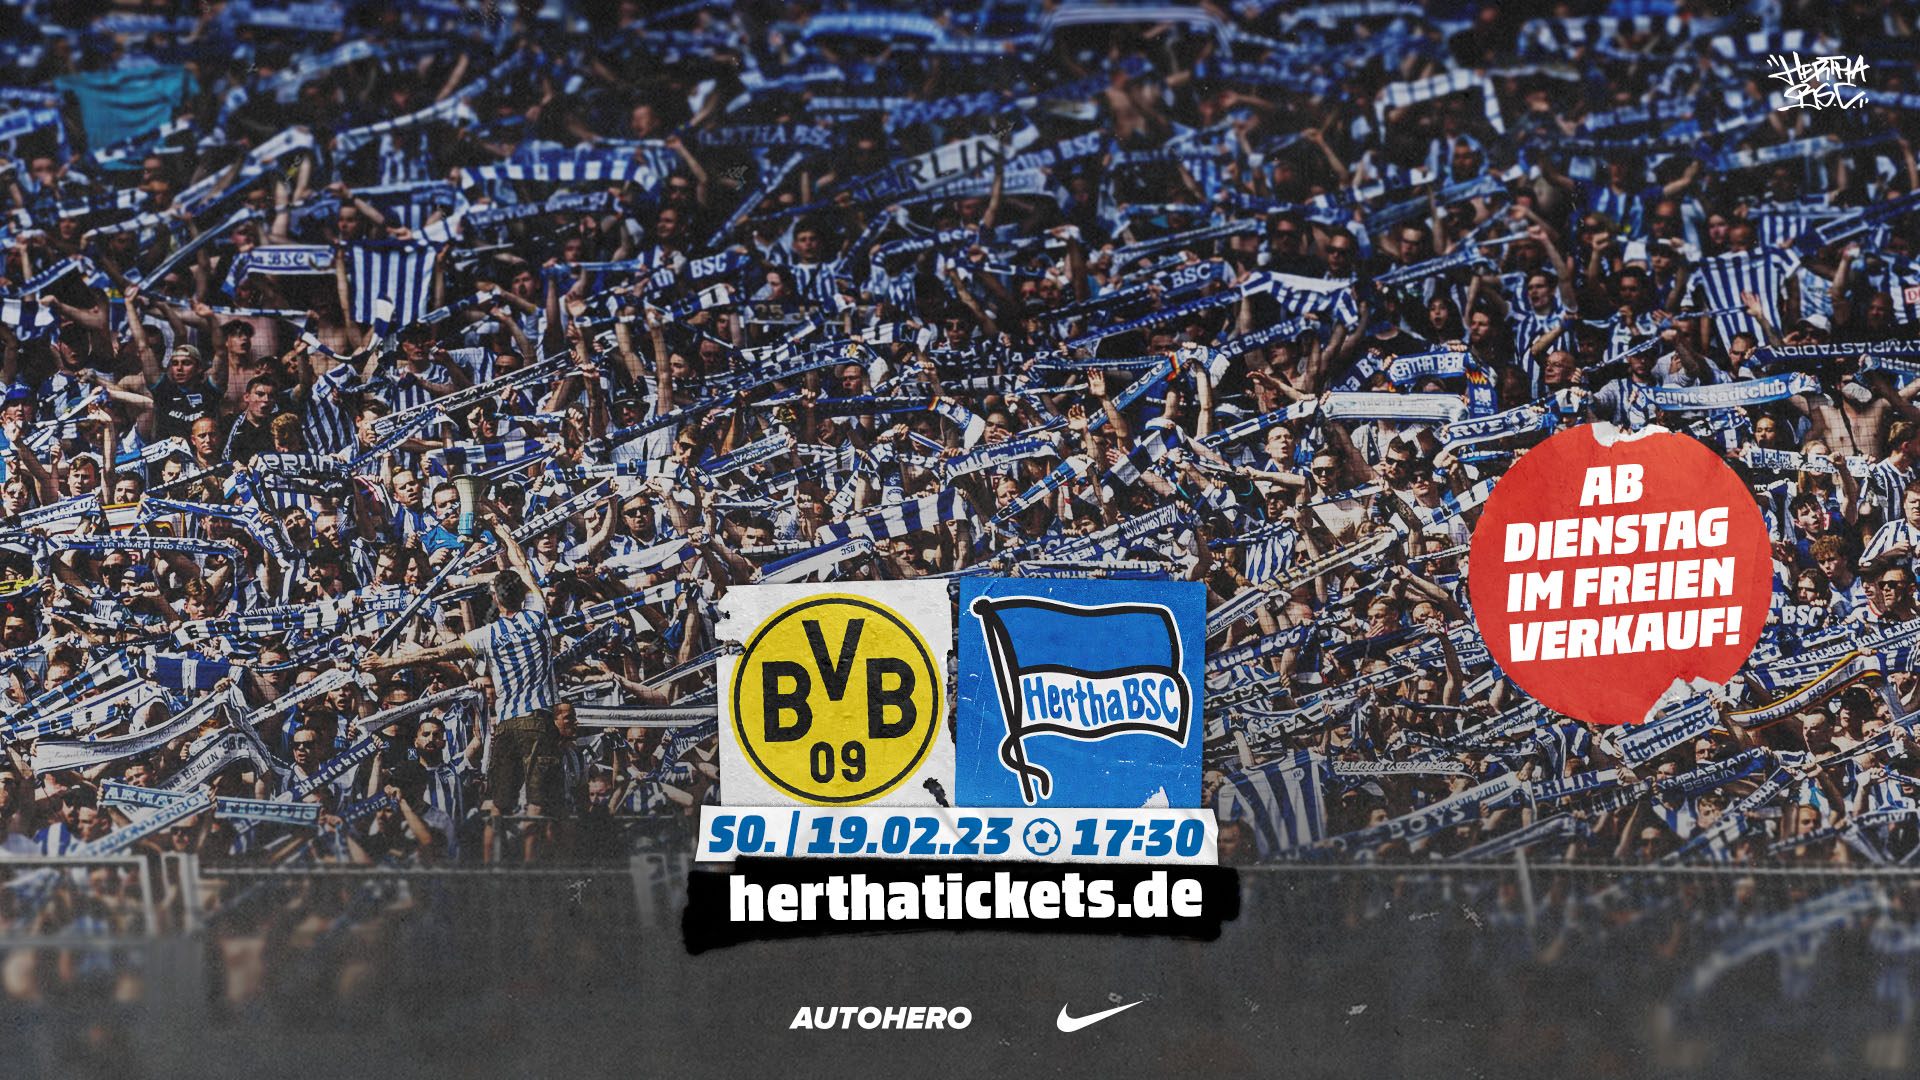 Die Logos von Borussia Dortmund Hertha BSC mit dem Störer "Ab Dienstag im freien Verkauf"!